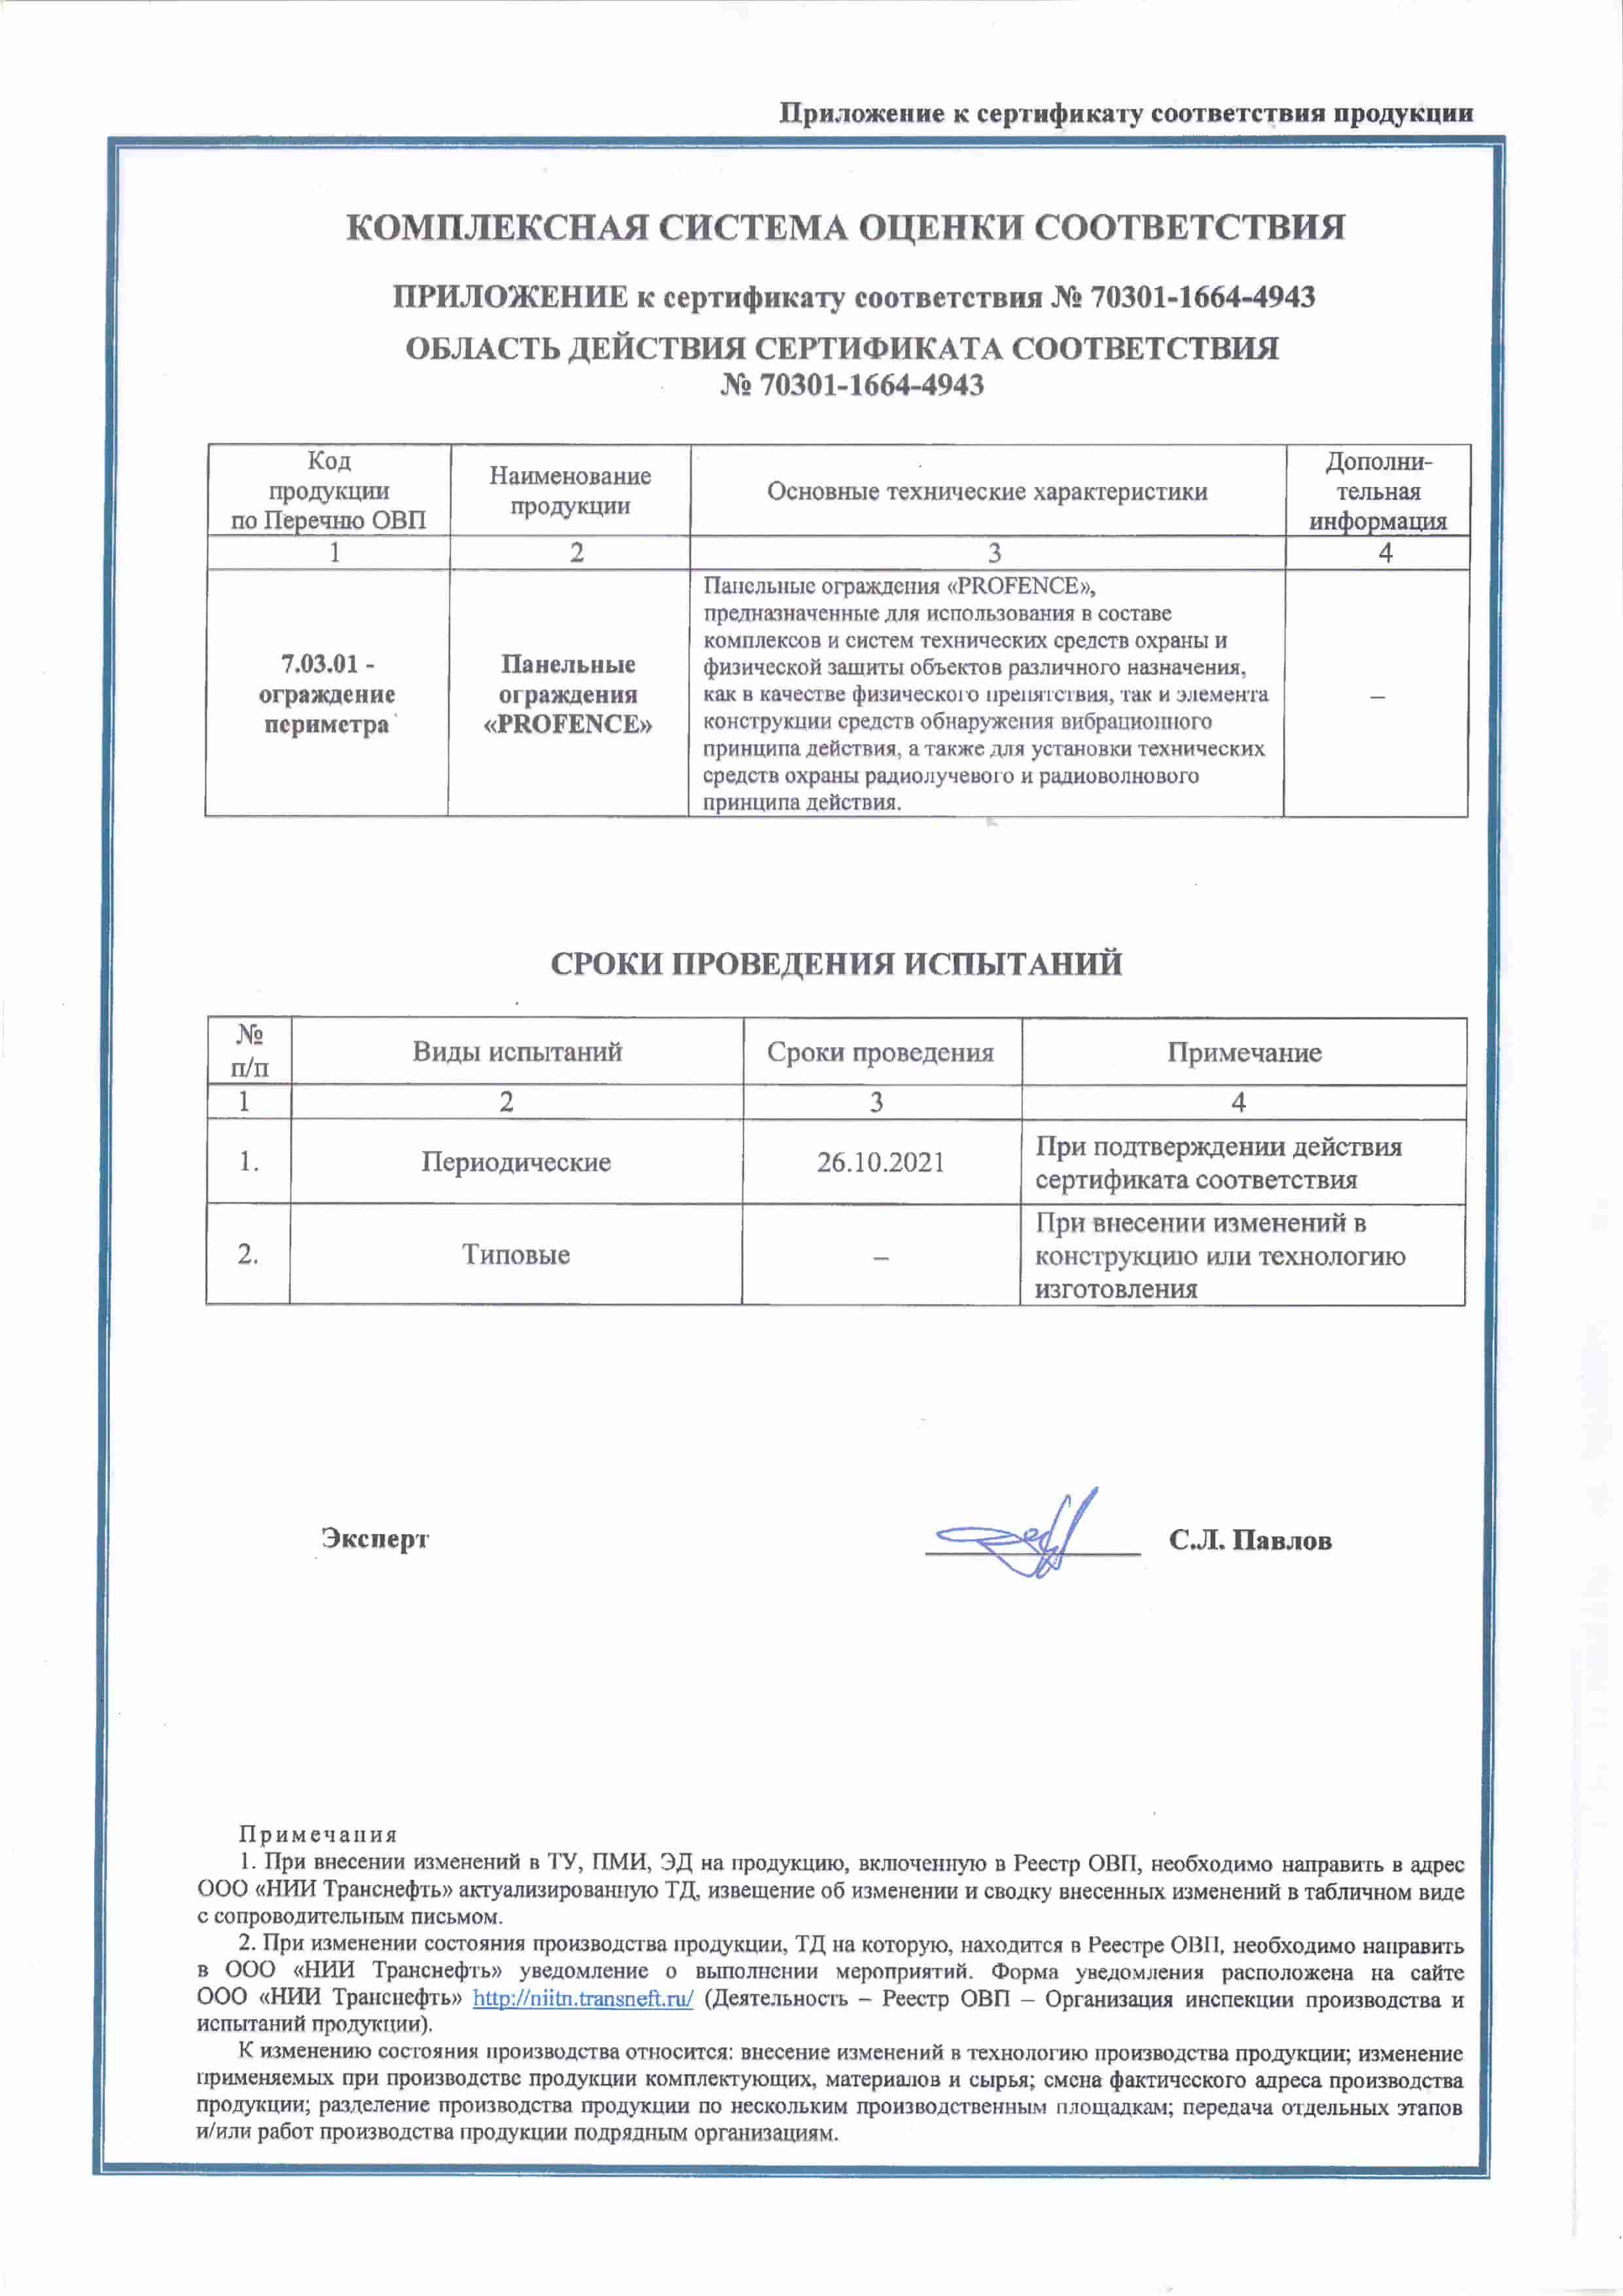 Сертификат соответствия продукции «Панельные ограждения «PROFENCE» (2)